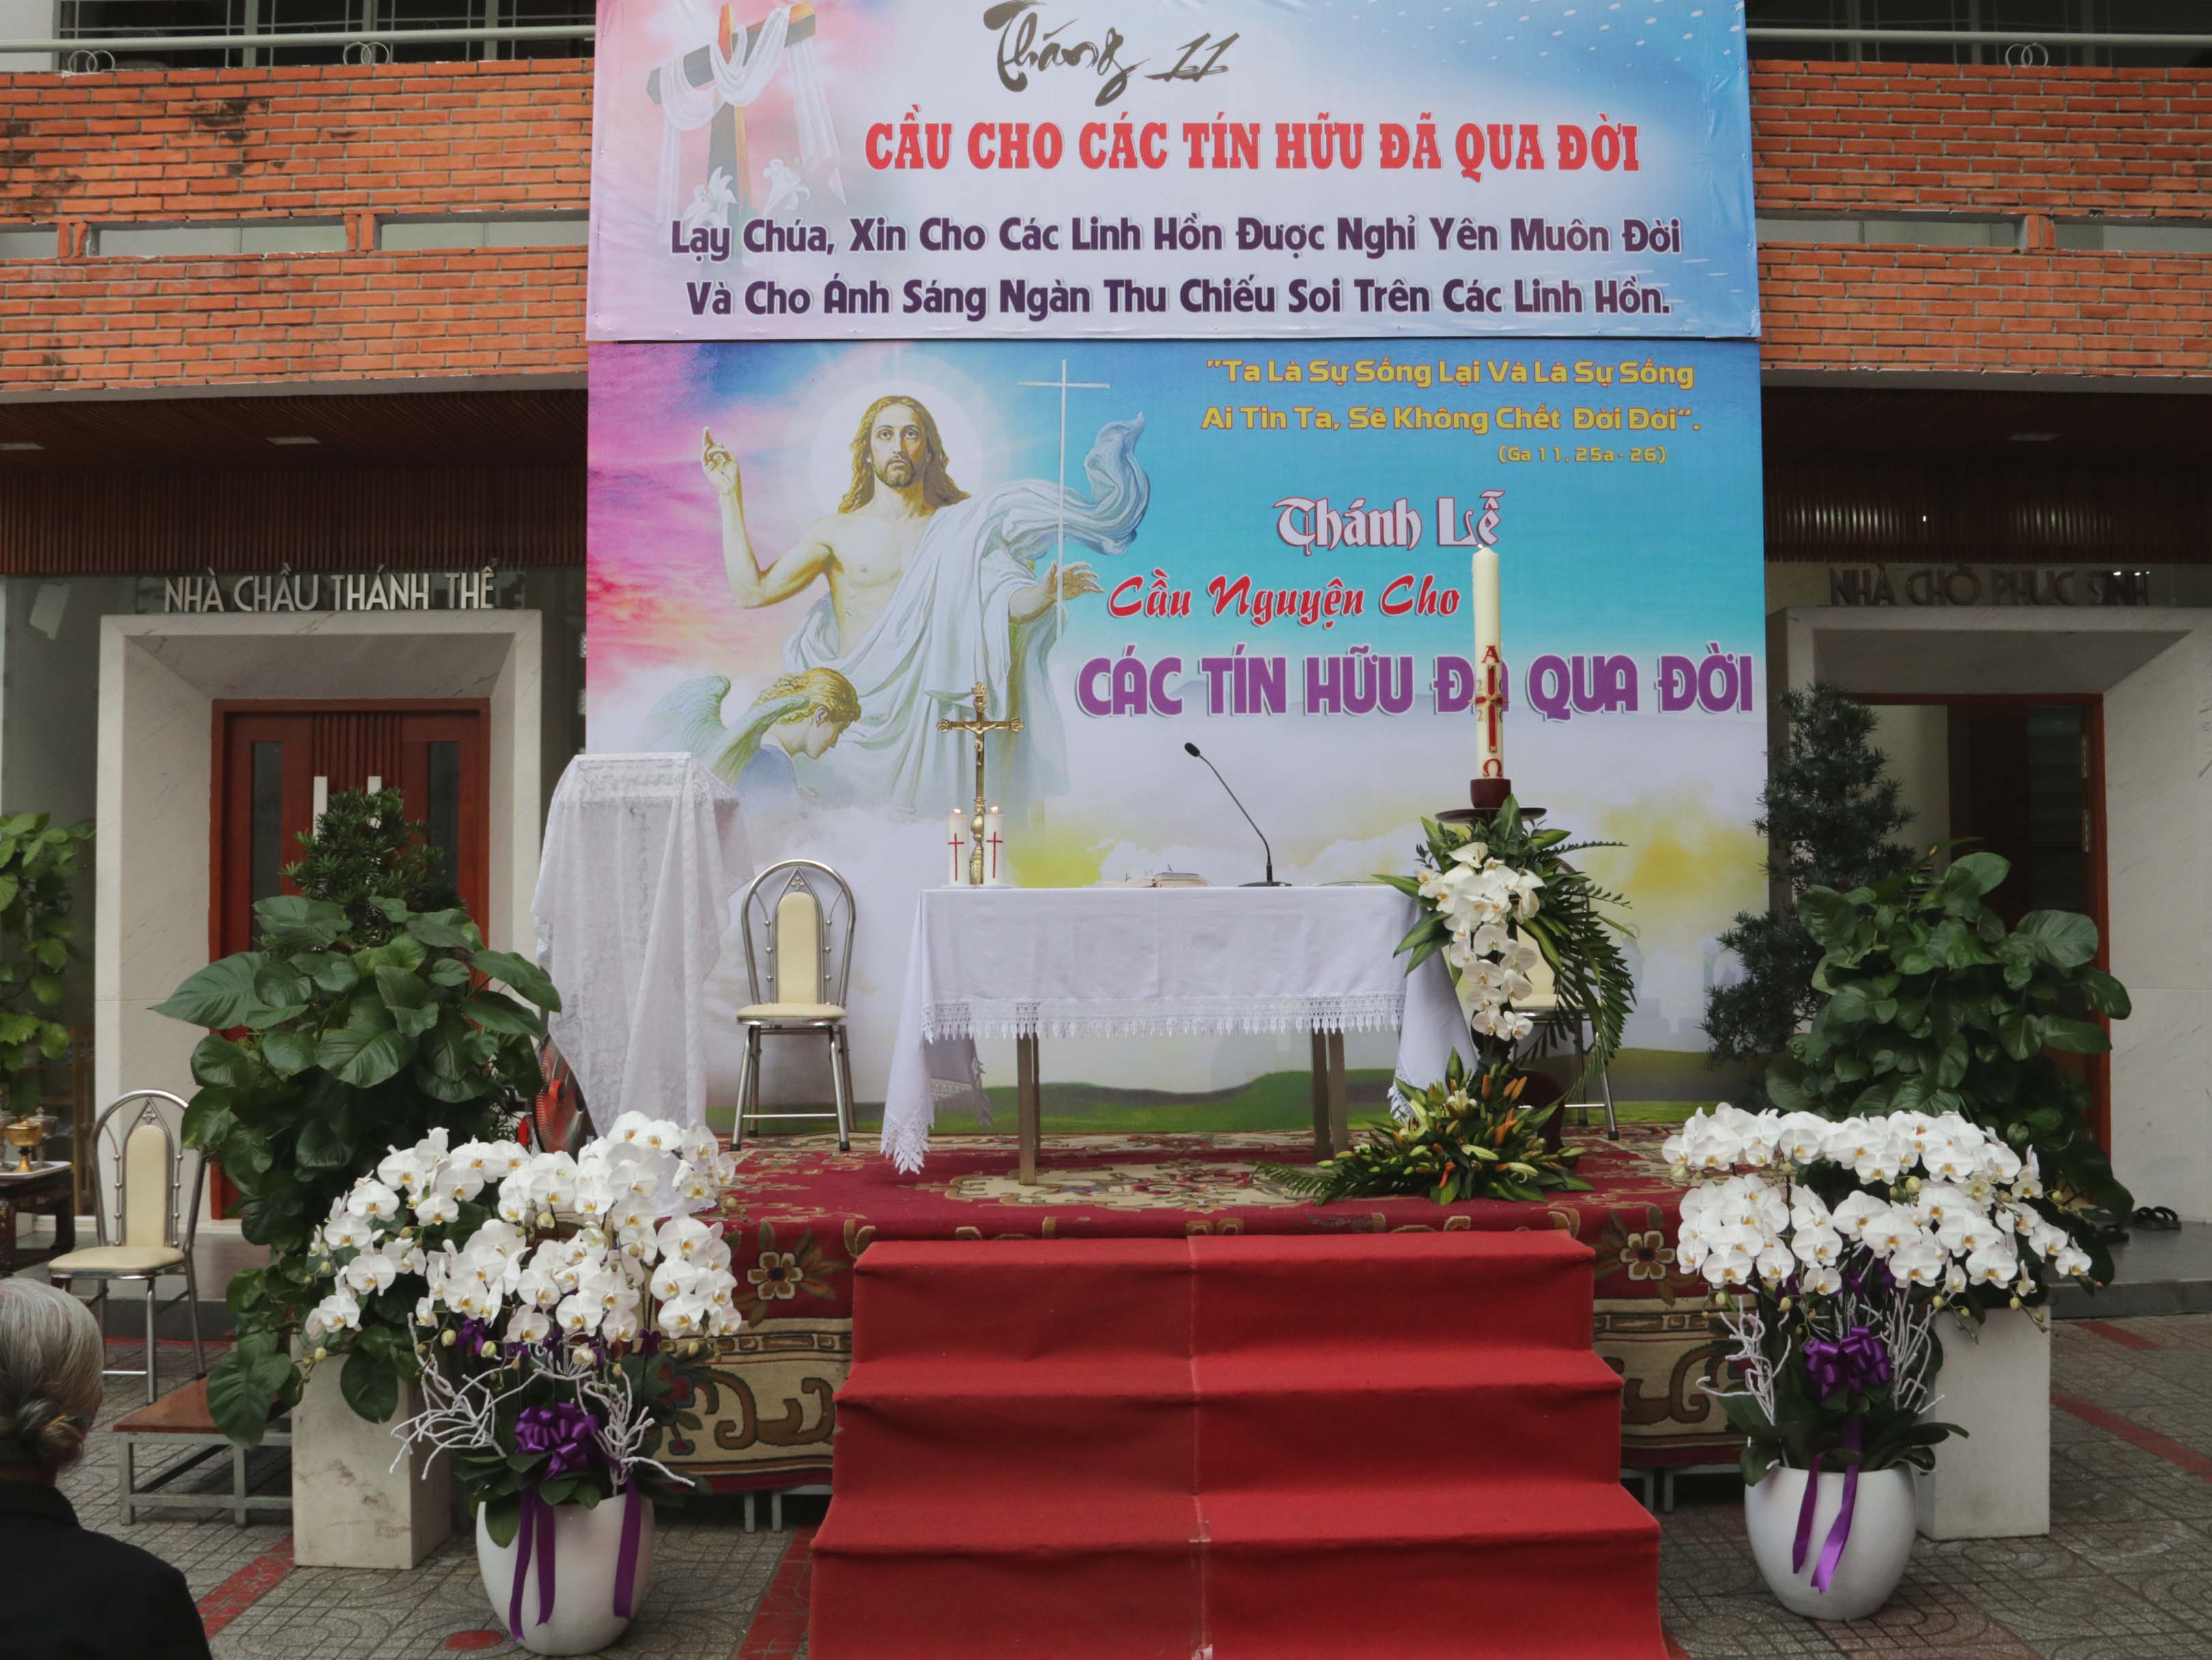 Giáo xứ Tân Việt: Thánh lễ cầu cho các linh hồn ngày 2-11-2020